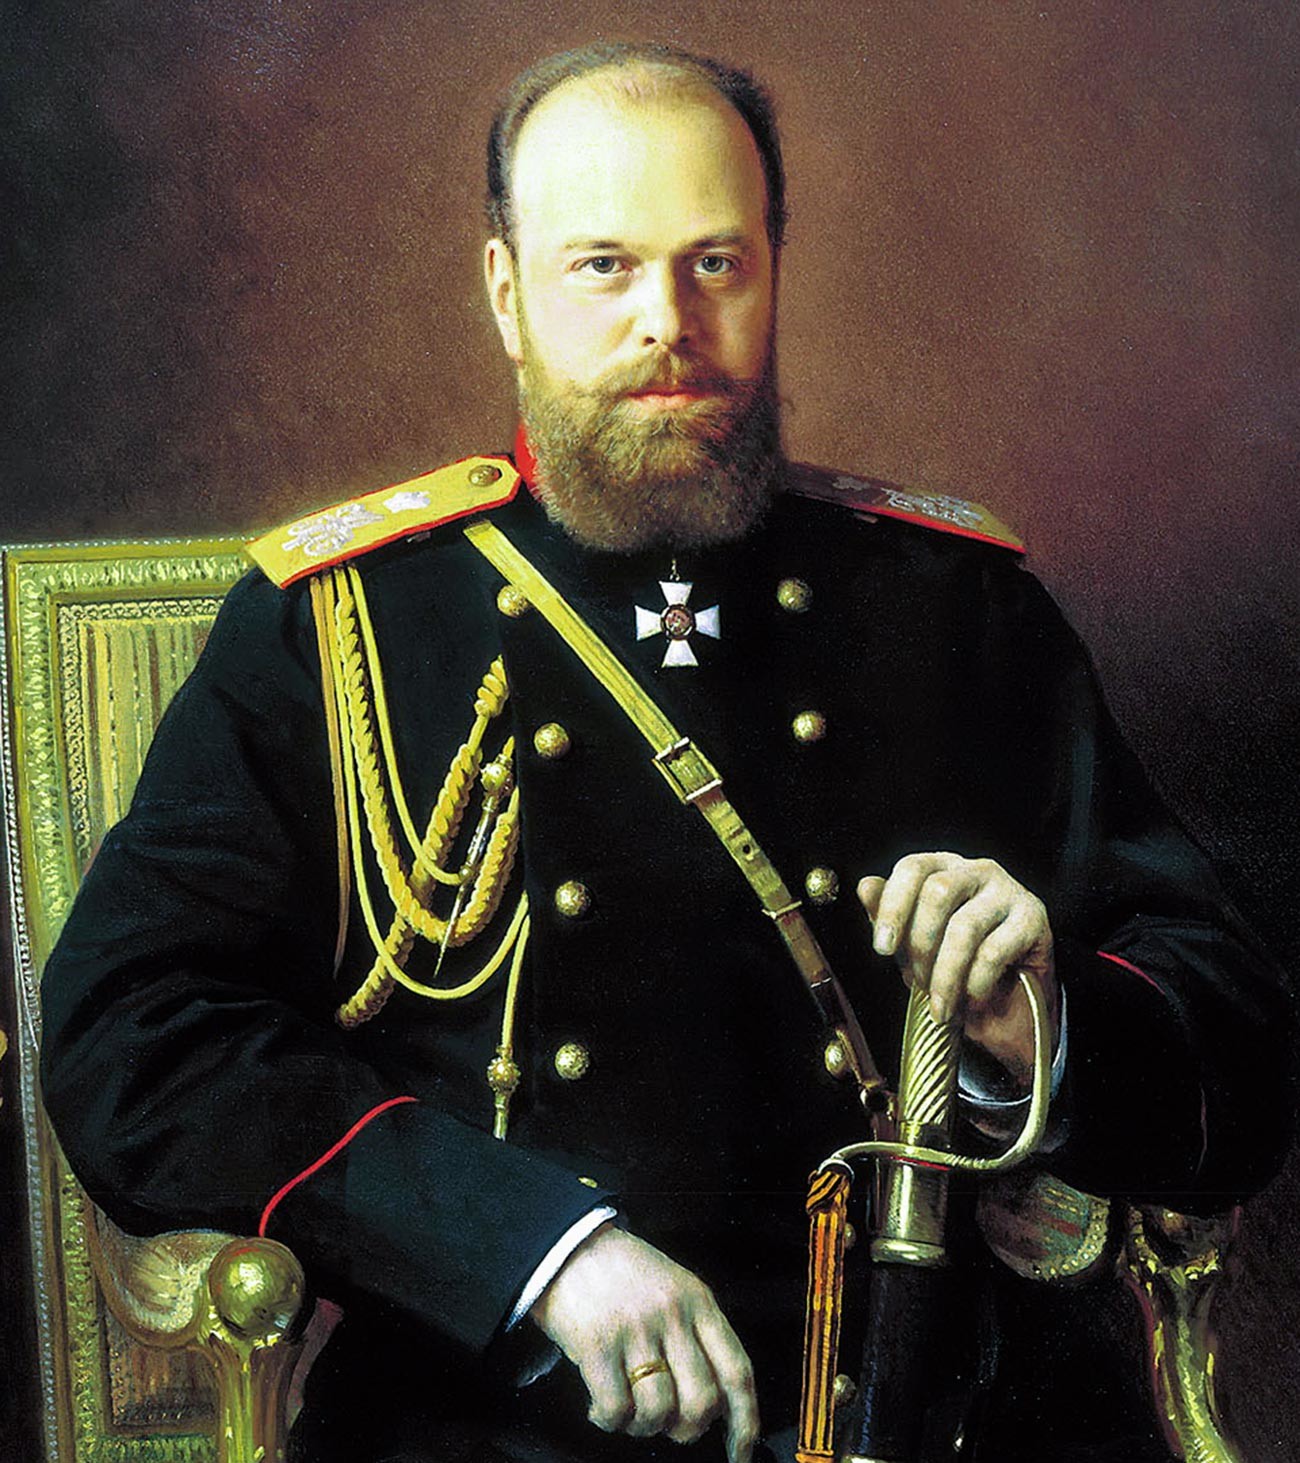 Aleksandr III